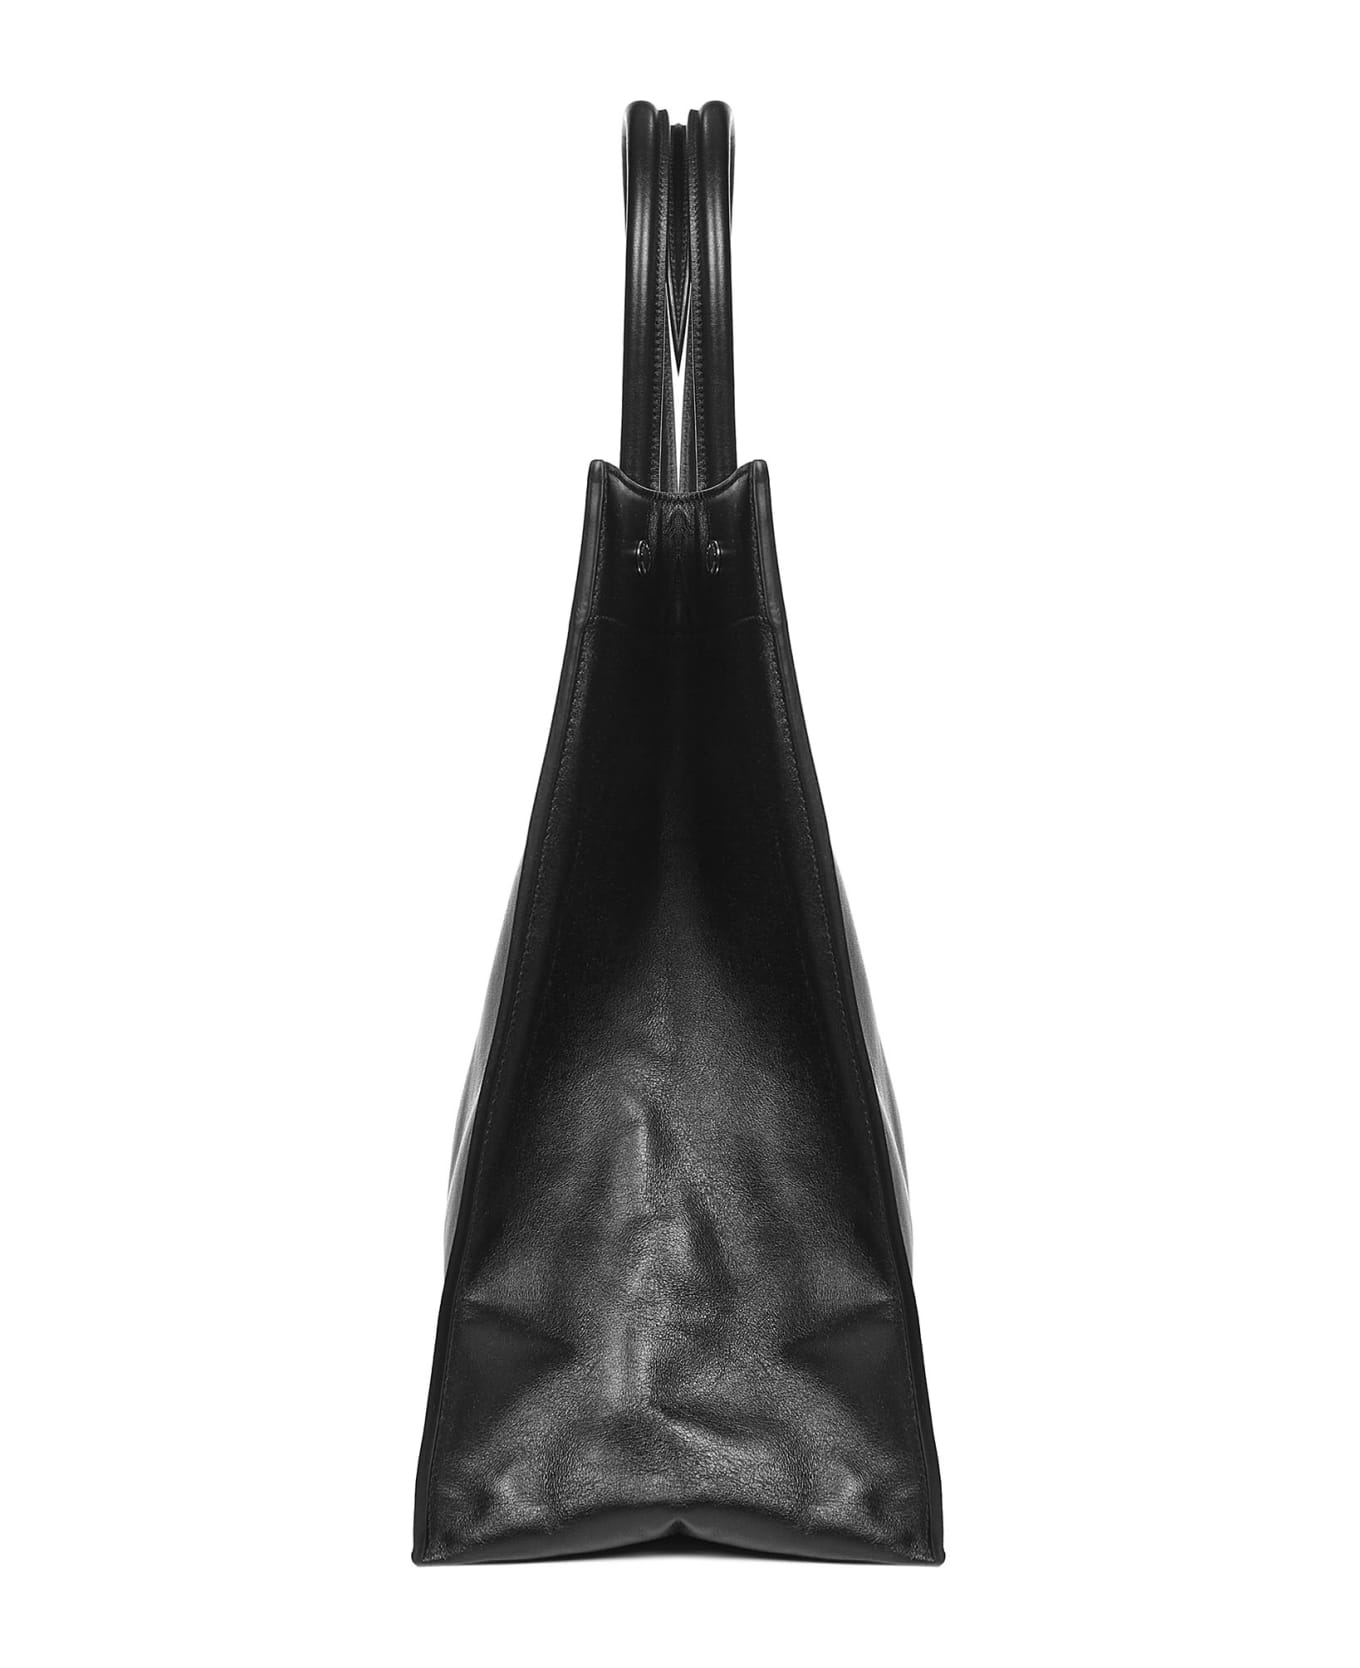 Saint Laurent Rive Gauche Large Tote Bag - Black